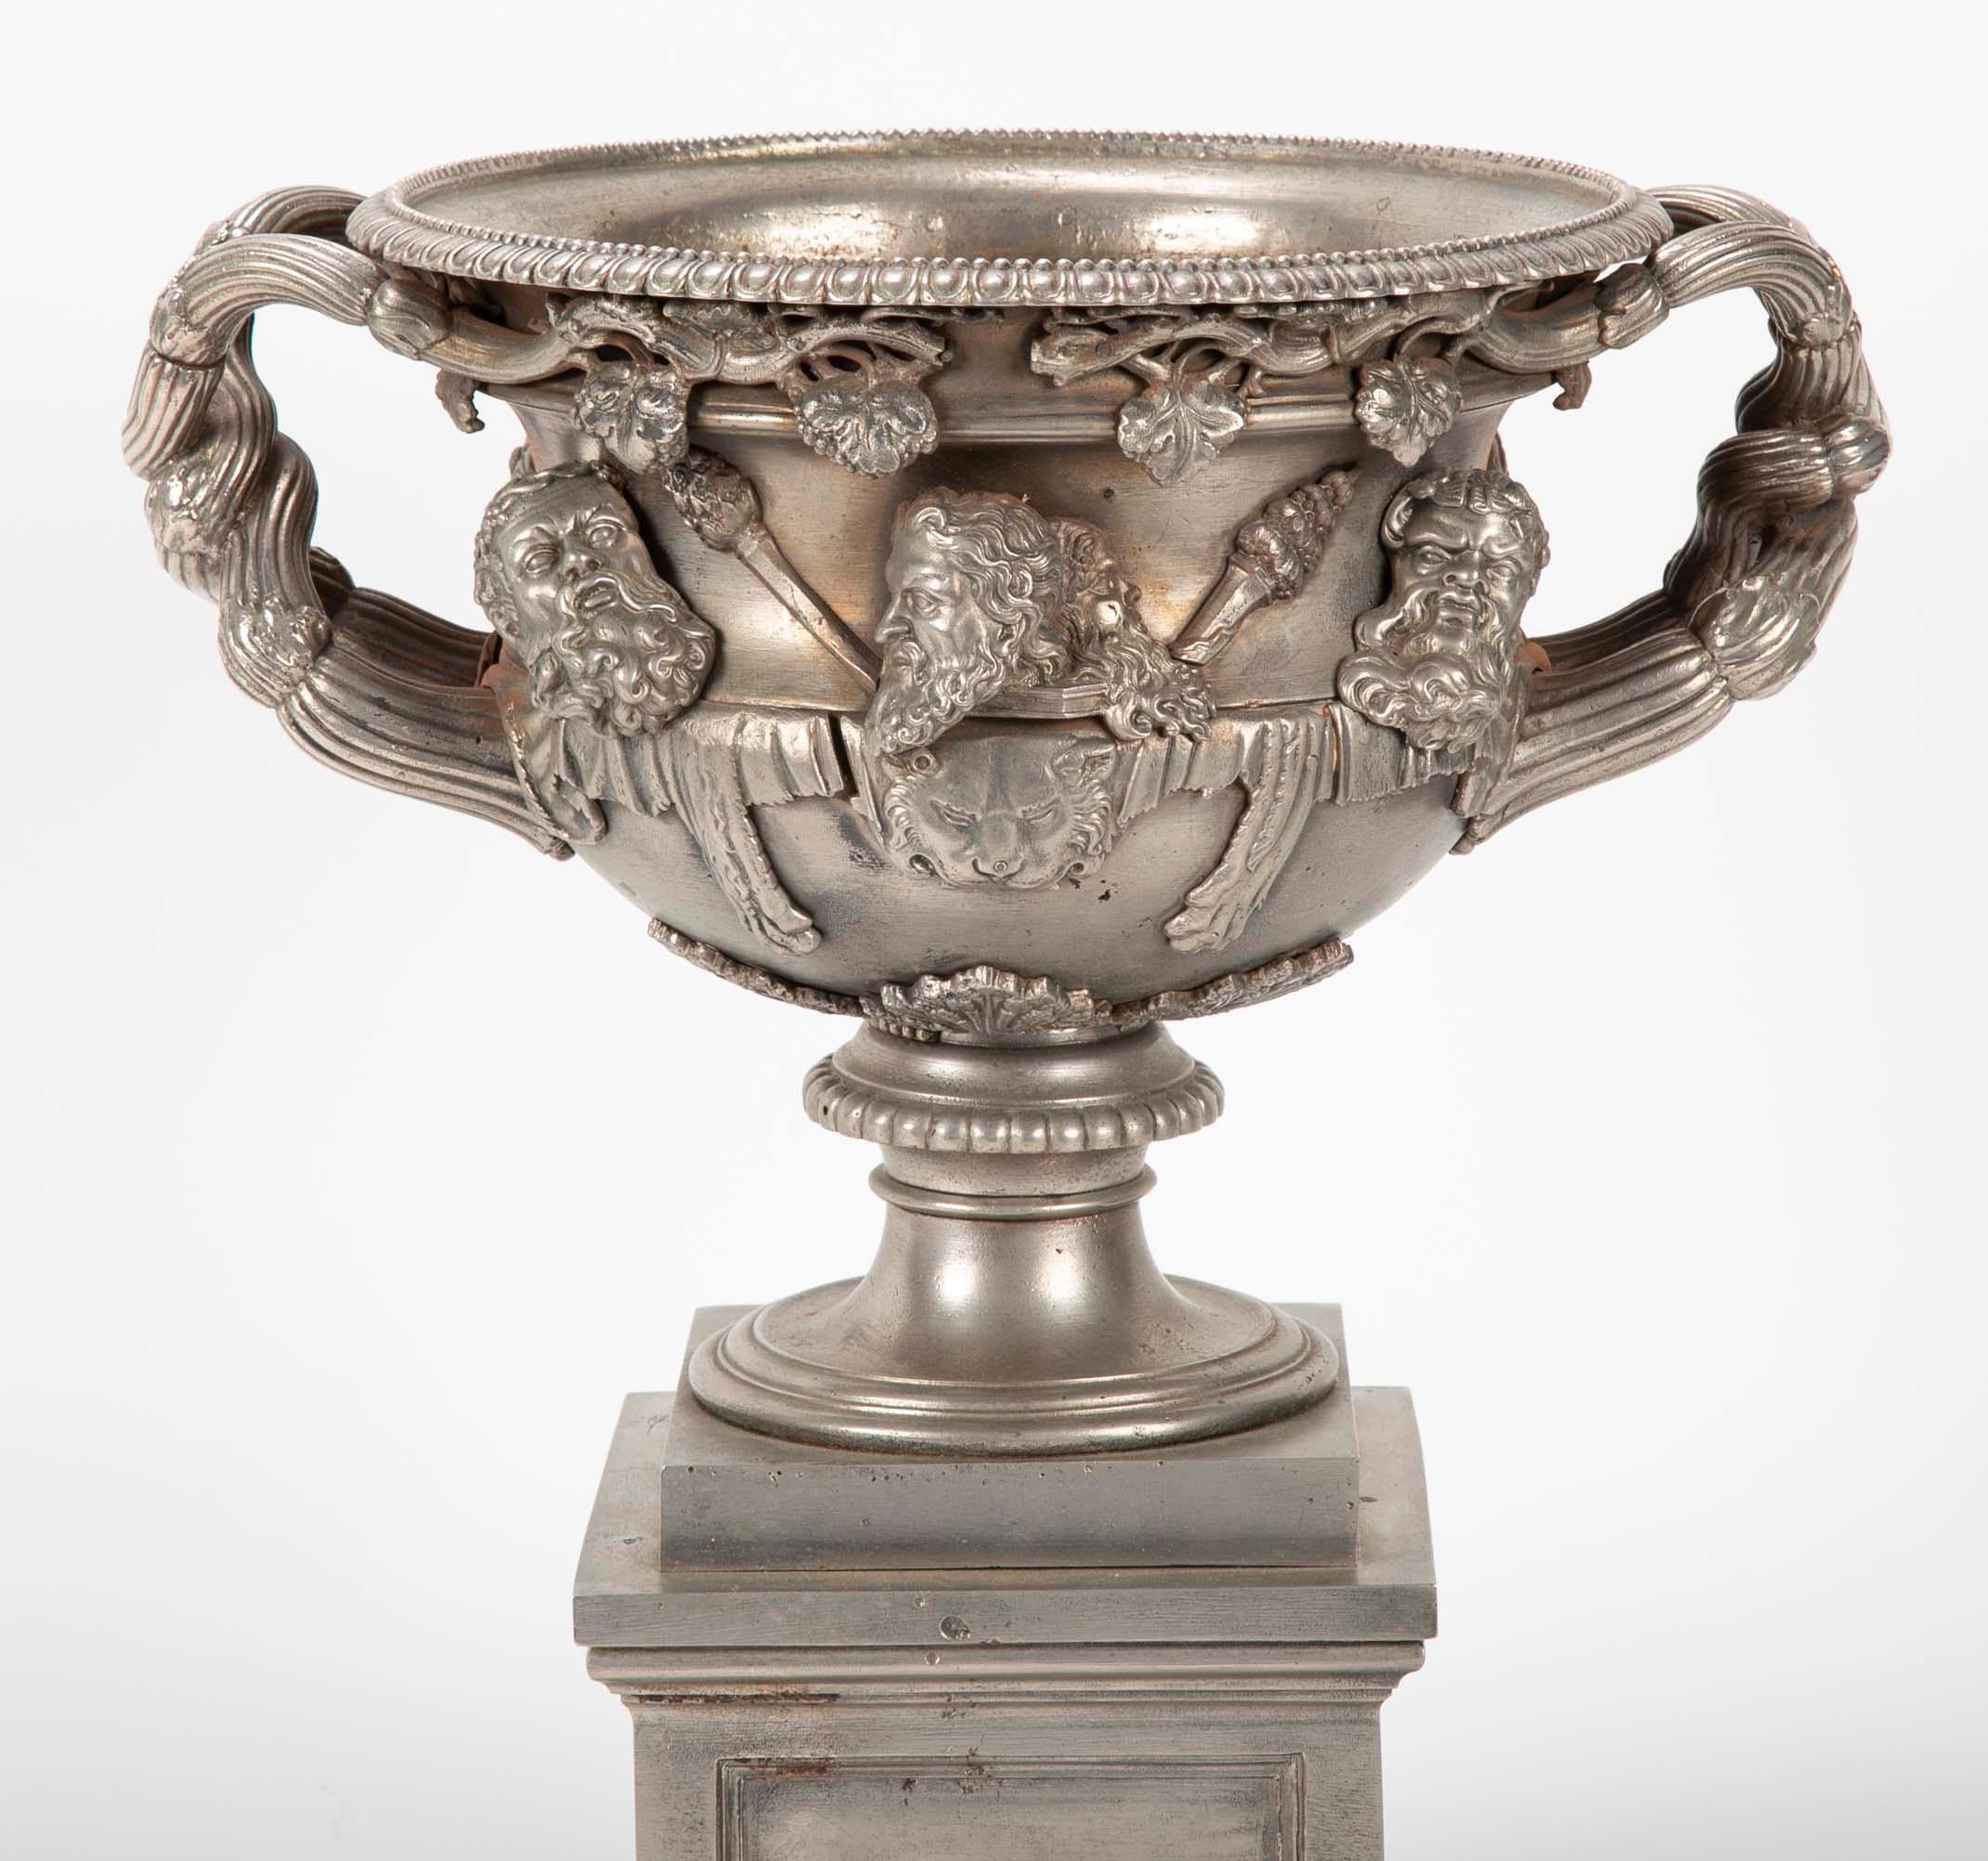 Ein schönes und beeindruckendes Beispiel Englisch Regency Zeitraum Warwick Vase in poliertem Stahl. Eine hübsche Nachbildung des berühmten römischen Originals. Nach ihrer Ausgrabung in der Hadriansvilla im späten 18. Jahrhundert erregte sie großes